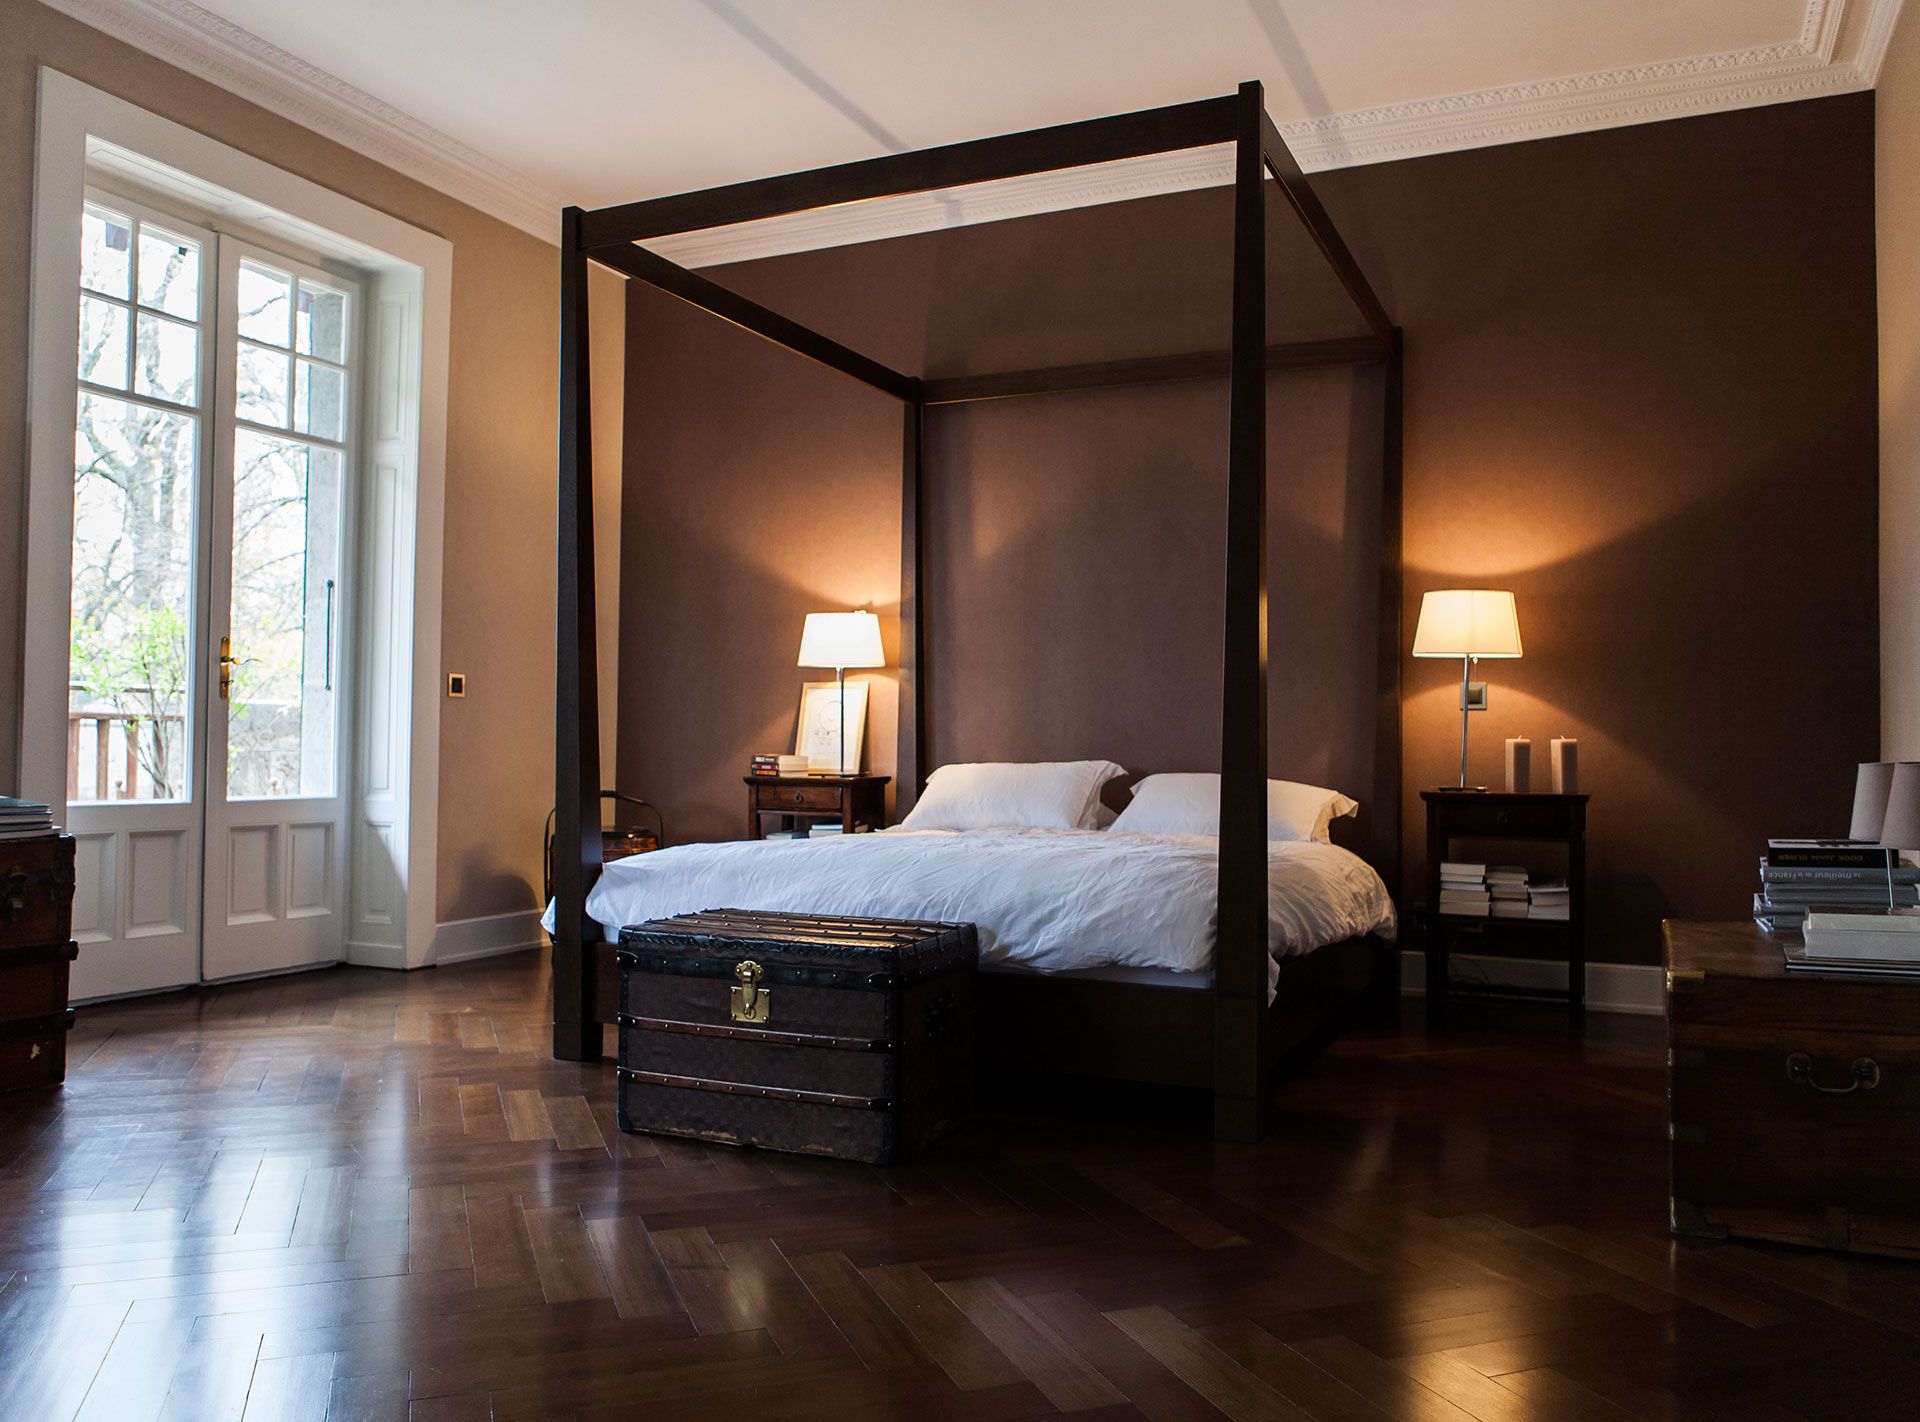 Chambre avec lit à baldaquin d'une maison de maitre à Conches. Réalisation Anne-Laure Ferry-Adam d'ID intérior design, architecte d'intérieur à Genève.